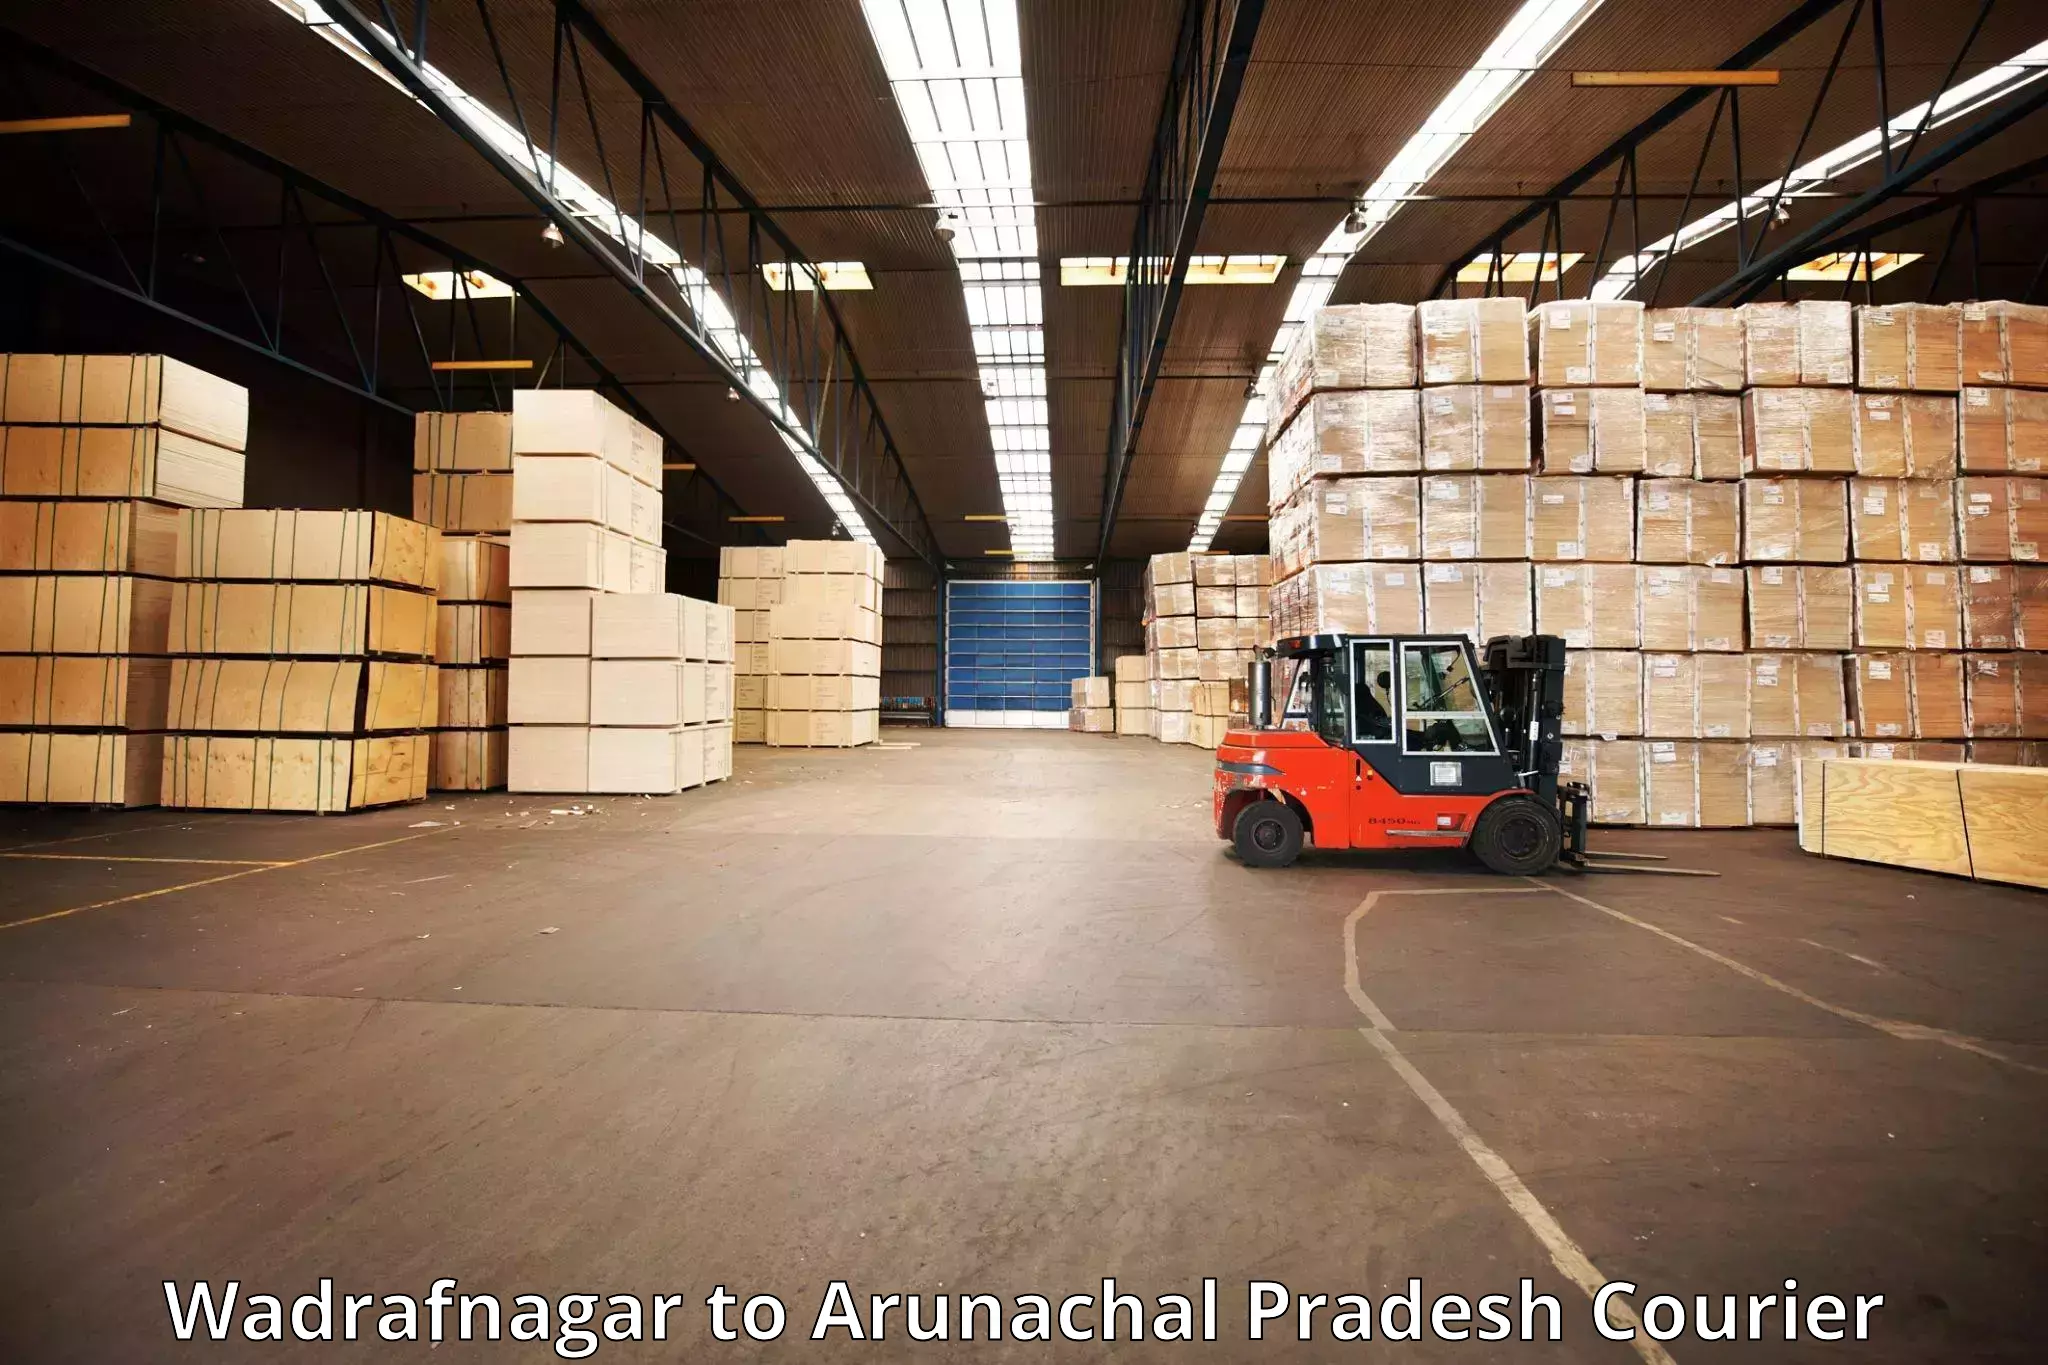 Luggage courier planning Wadrafnagar to Arunachal Pradesh